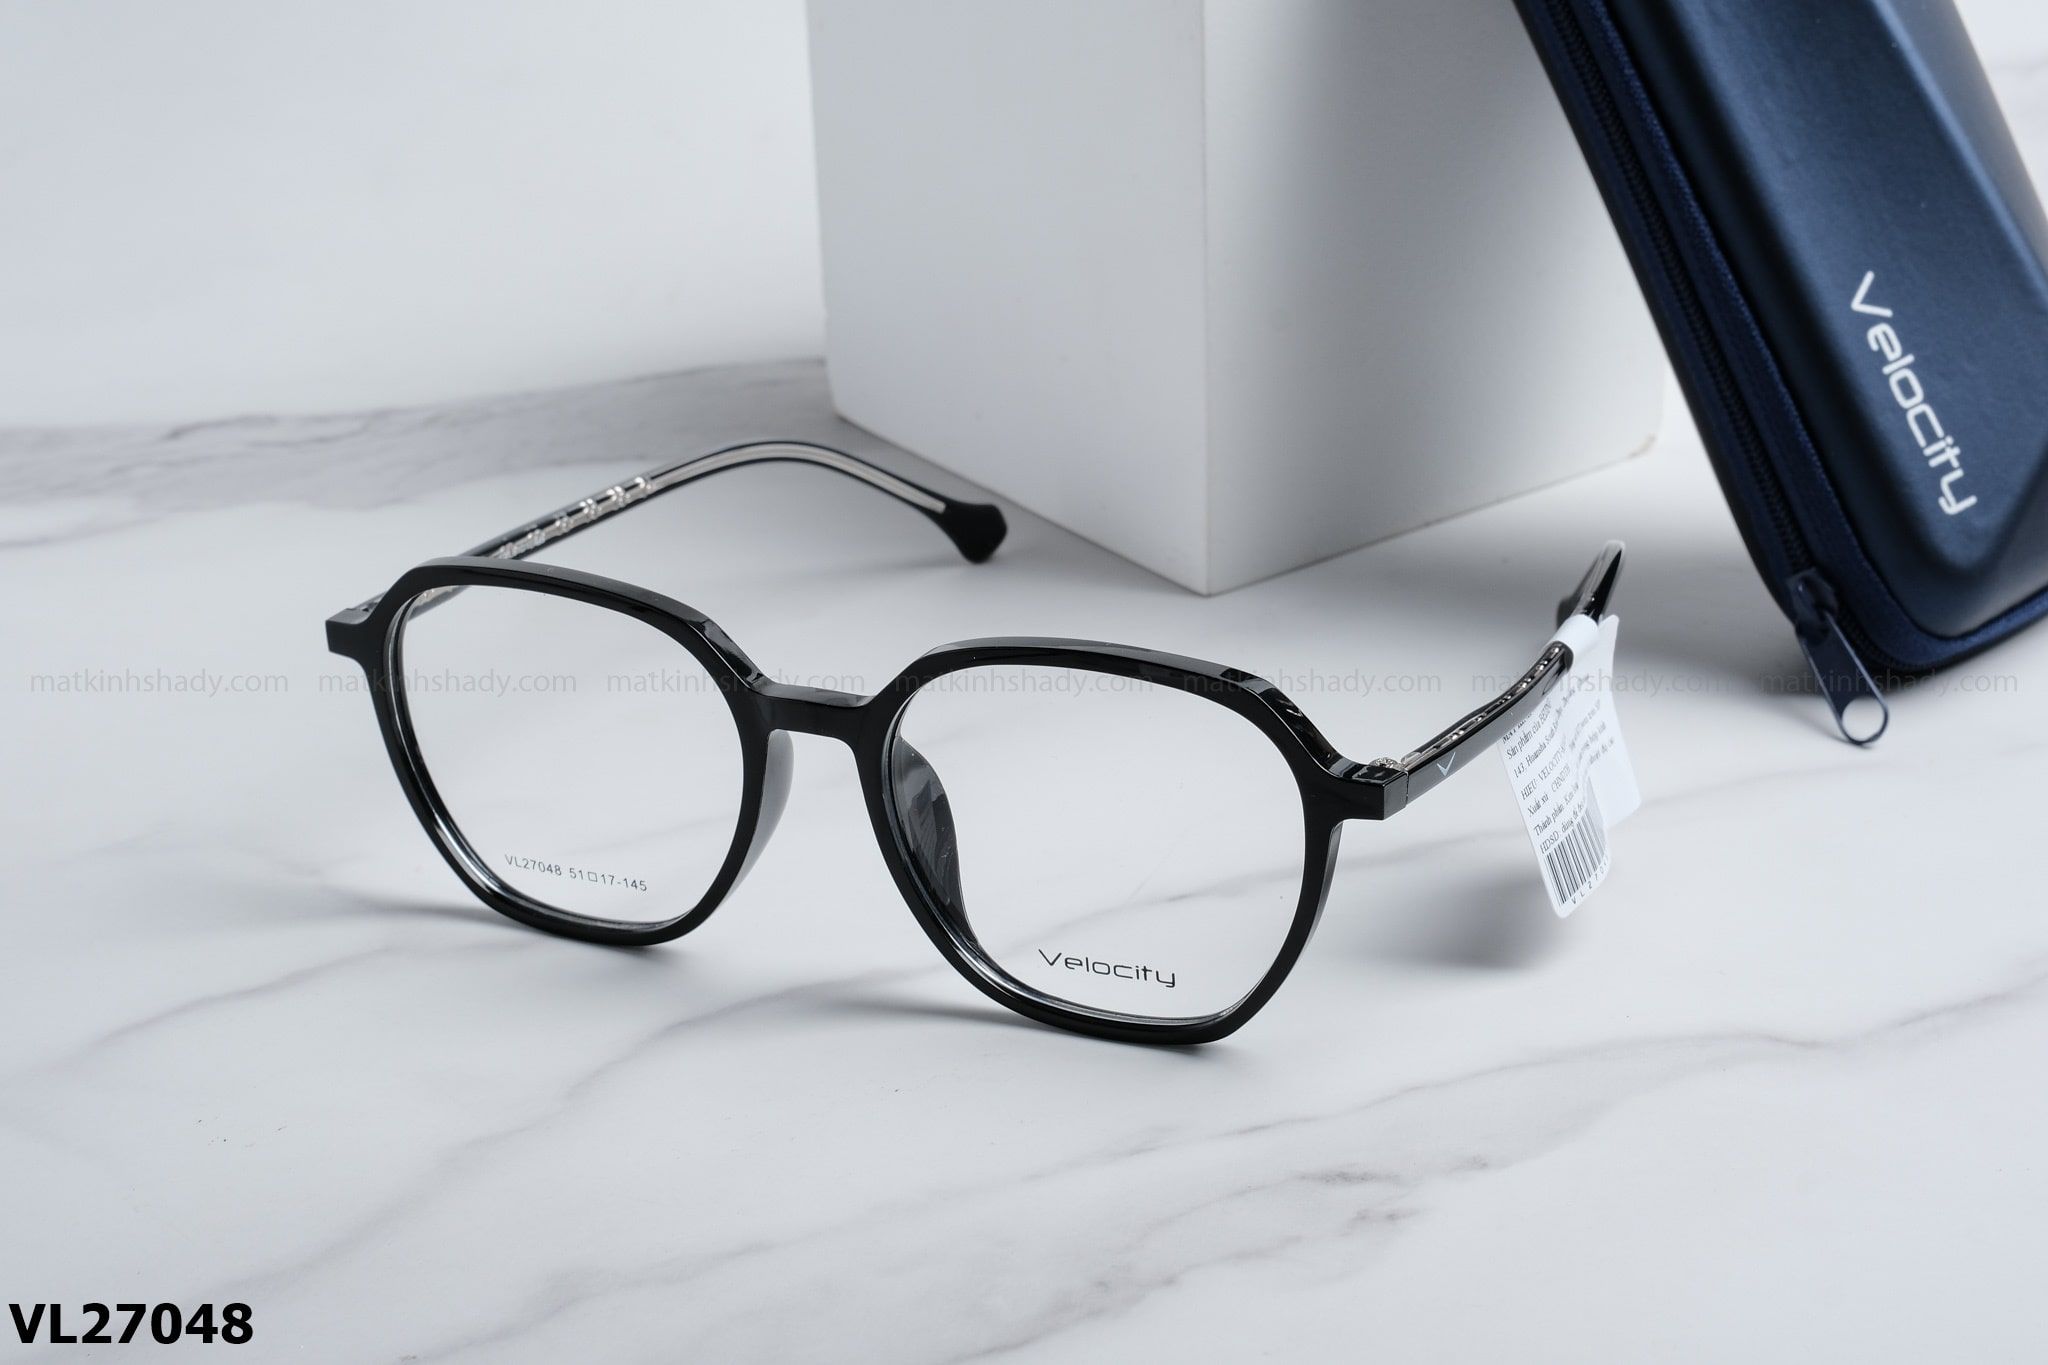  Velocity Eyewear - Glasses - VL27048 